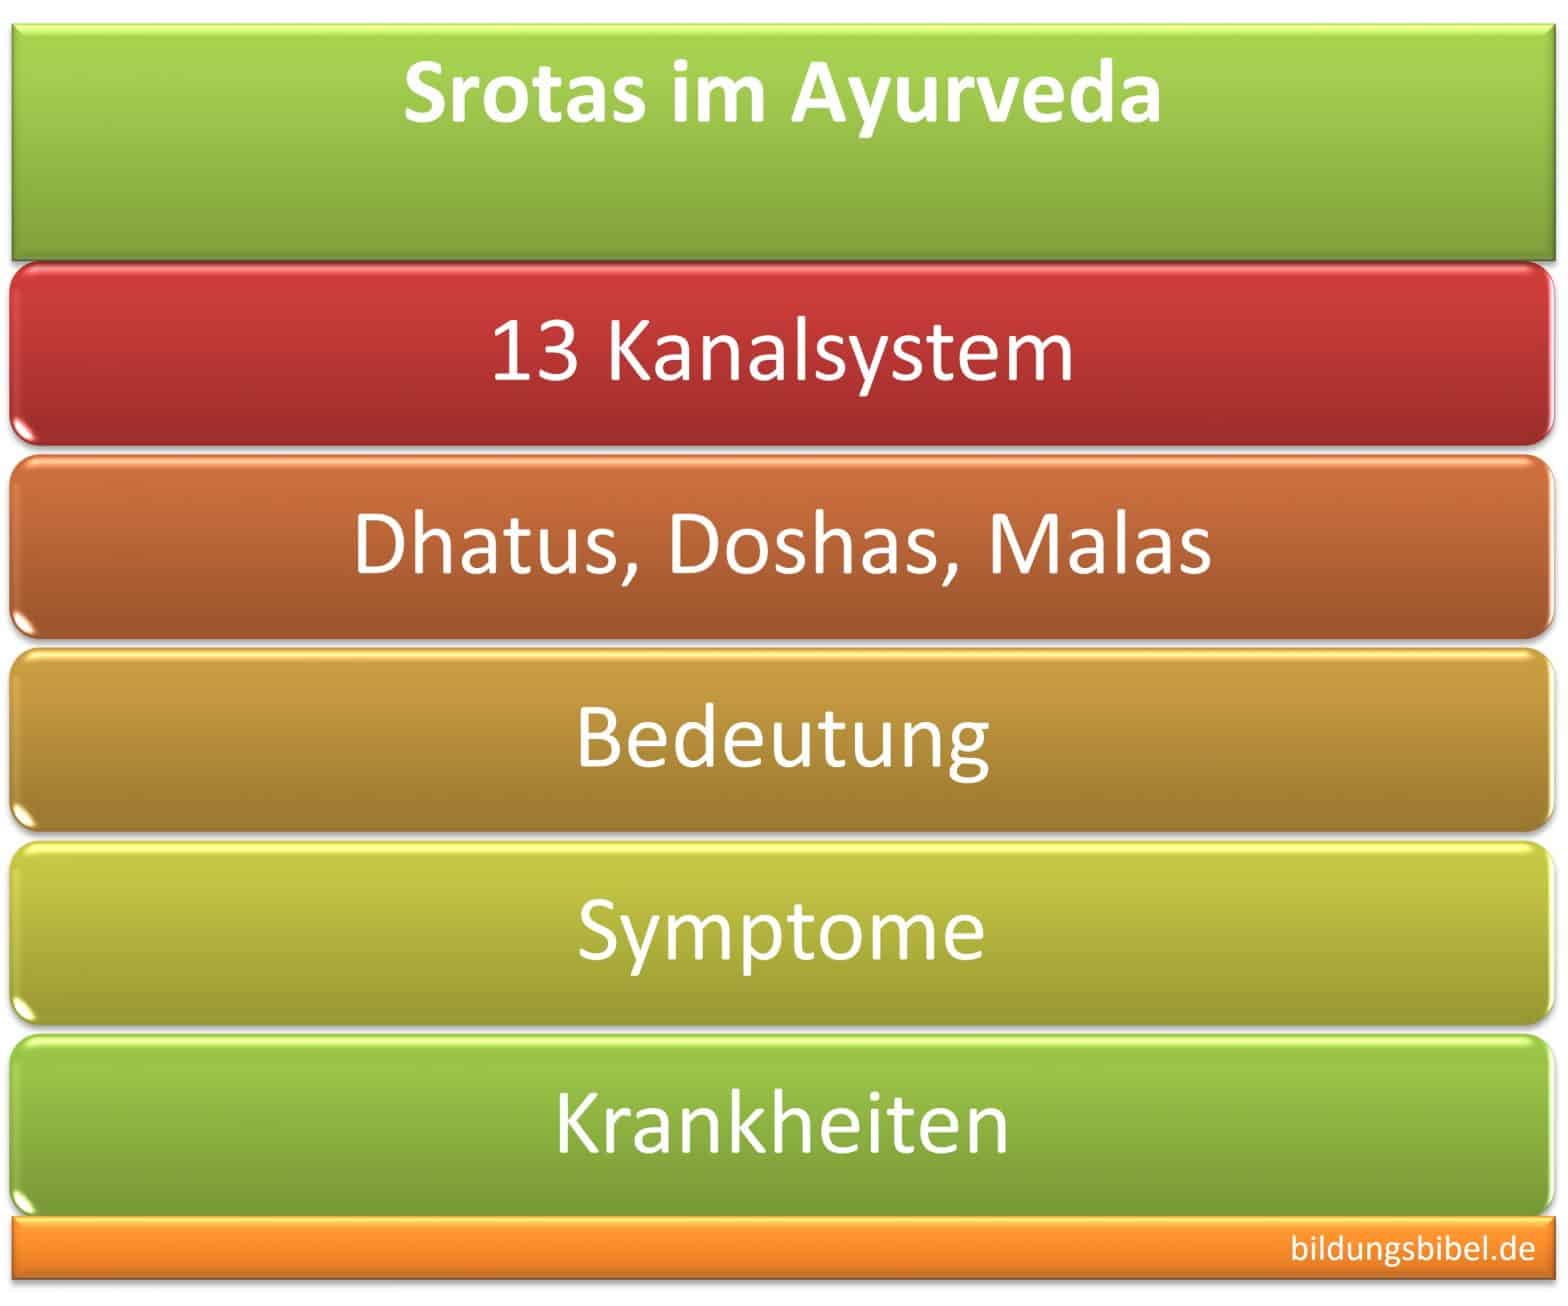 Srotas im Ayurveda, Kanalsystem für Gewebe, Säfte, Abfall, Dhatus, Doshas, Malas, Symptome, Krankheit, Bedeutung, Verhaltensweisen.